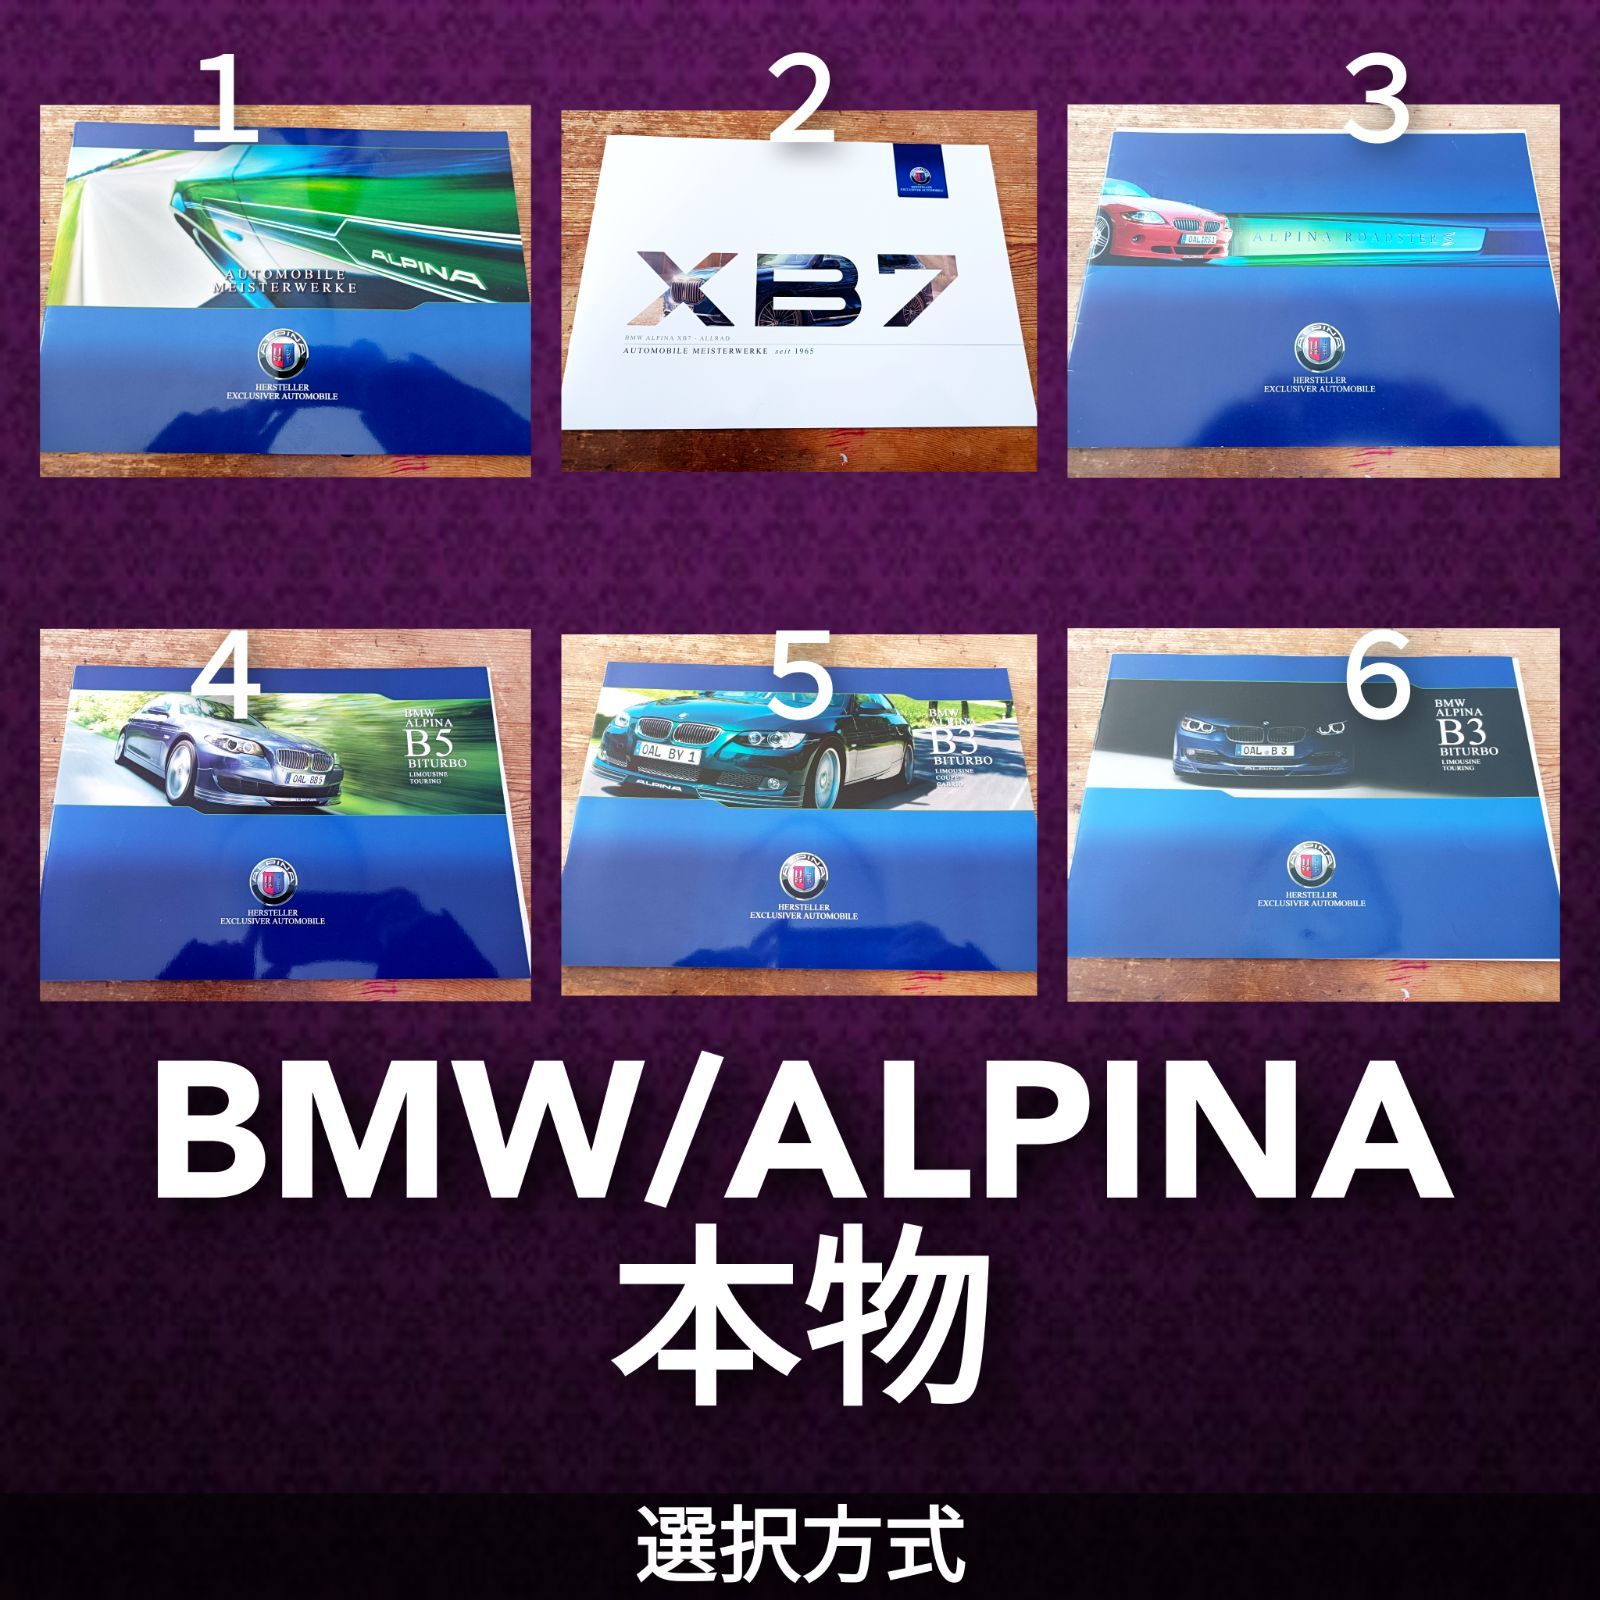 BMW アルピナ カタログ B3 B5 XB7 ロードスター ご選択ください 信頼と納得のなかじまブランド メルカリ